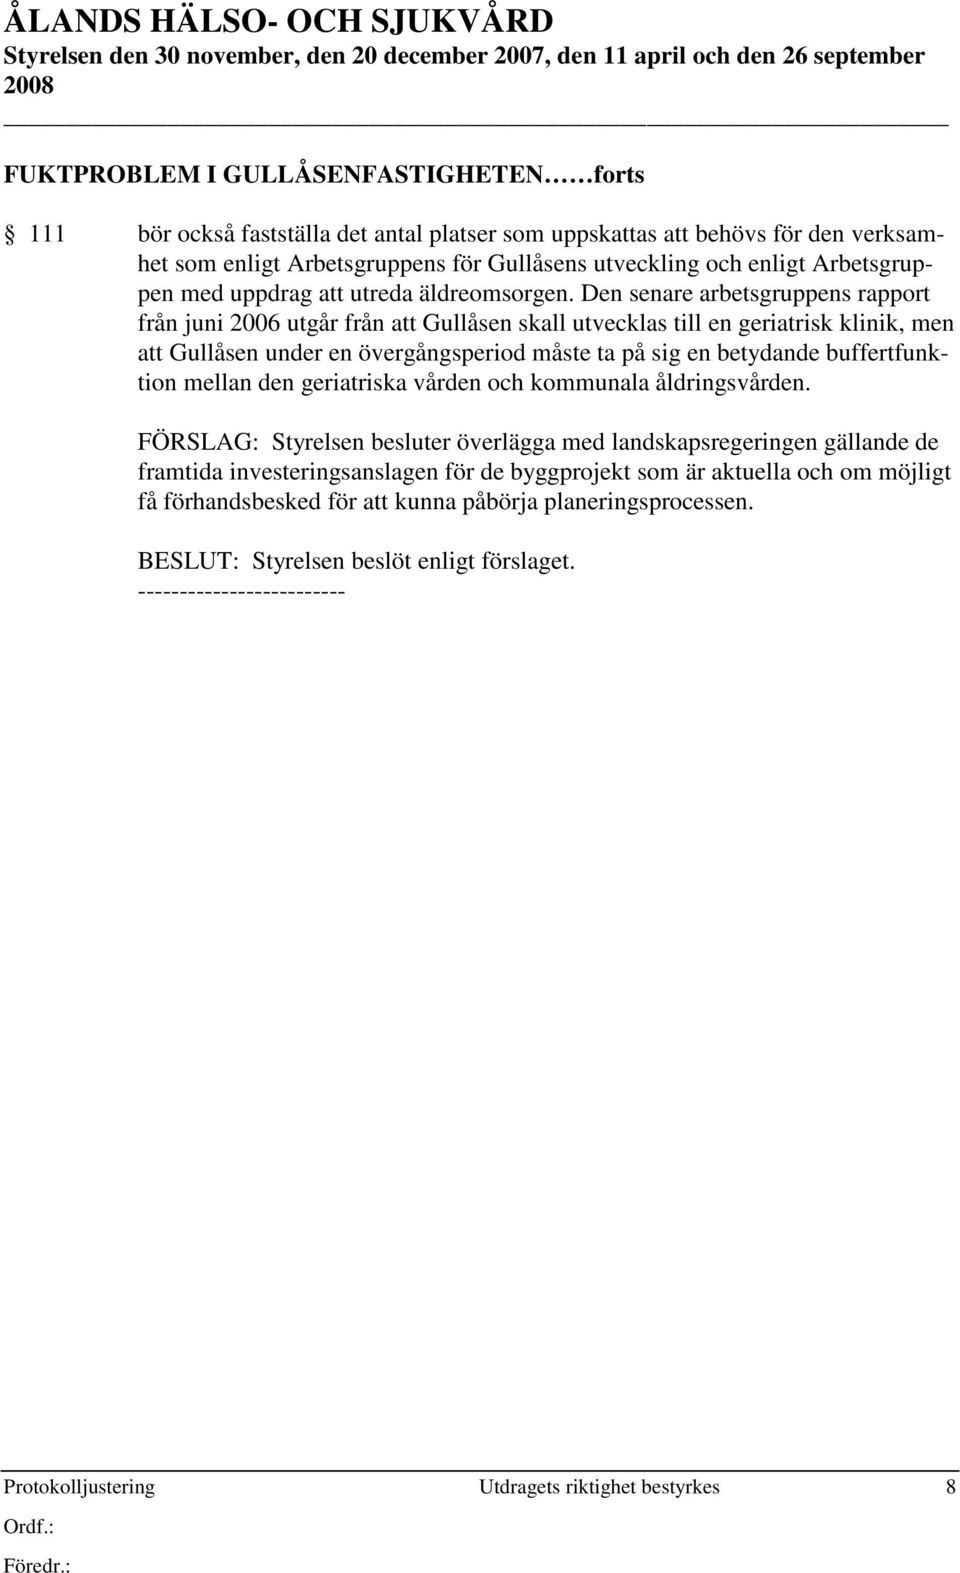 Den senare arbetsgruppens rapport från juni 2006 utgår från att Gullåsen skall utvecklas till en geriatrisk klinik, men att Gullåsen under en övergångsperiod måste ta på sig en betydande